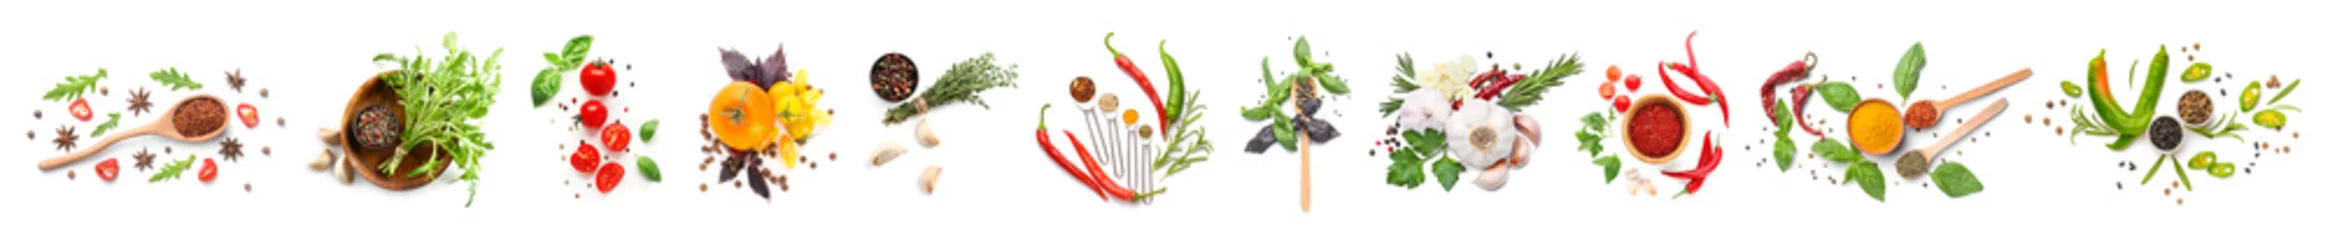 Keuken foto achterwand Verse groenten Verschillende verse specerijen, kruiden en groenten op witte achtergrond